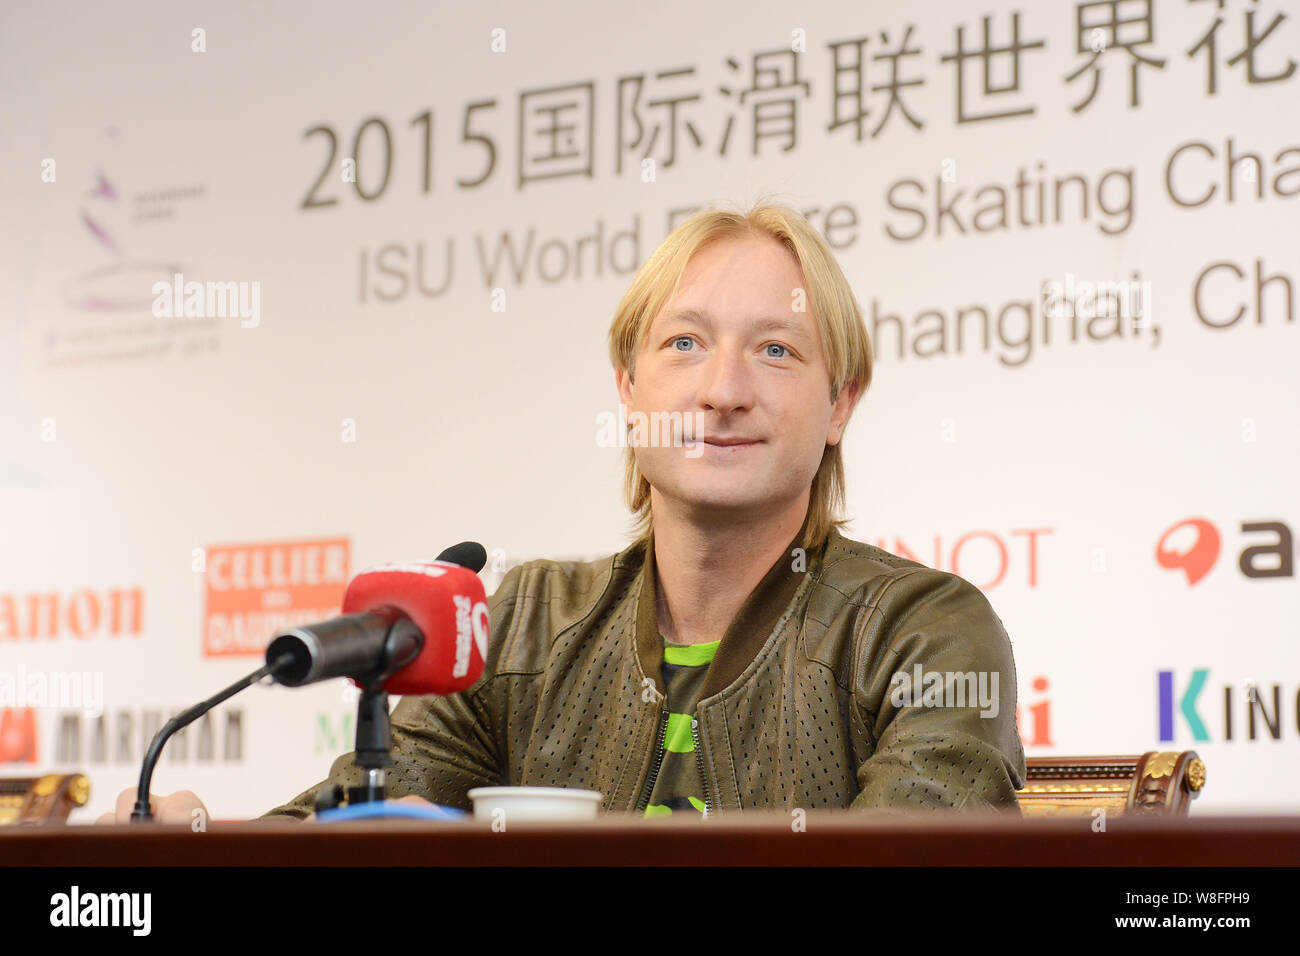 Russische Eiskunstläufer Evgeni Wiktorowitsch Pluschenko besucht eine Pressekonferenz für den ISU-Welt Eiskunstlauf-WM 2015 in Shanghai, China, Stockfoto